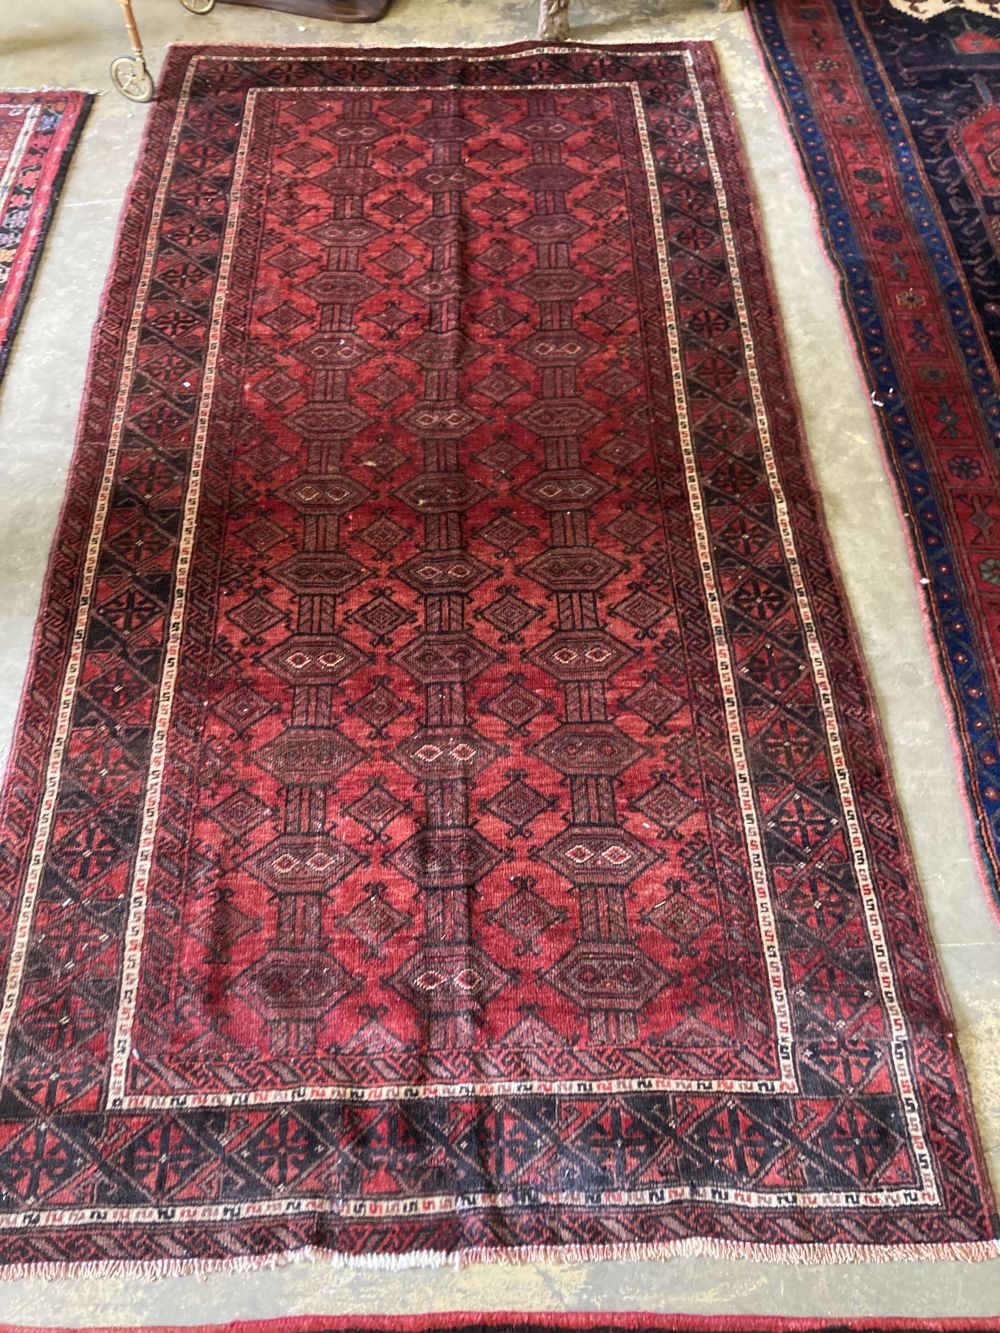 A Turkman carpet, 260 x 135cm